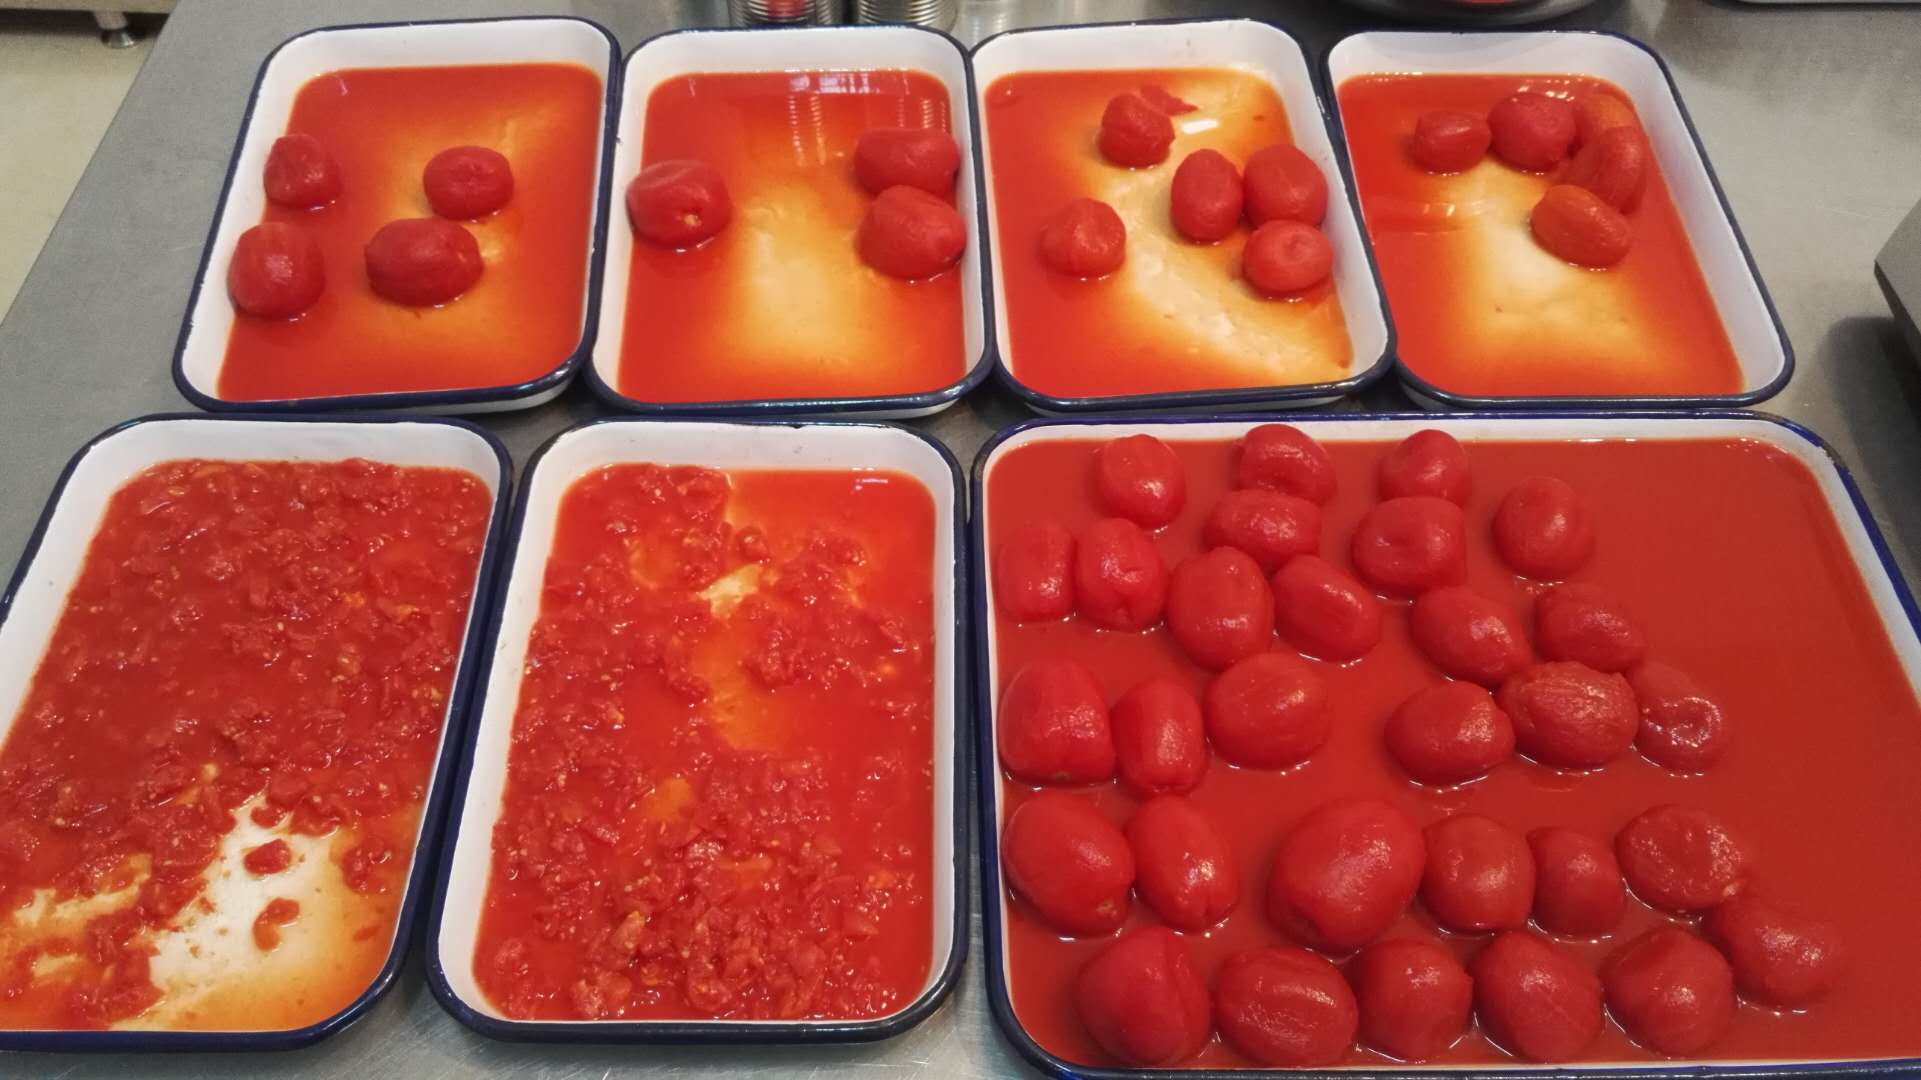 Potong dadu tomat dalam kaleng 400g,800g,2500g,2850g